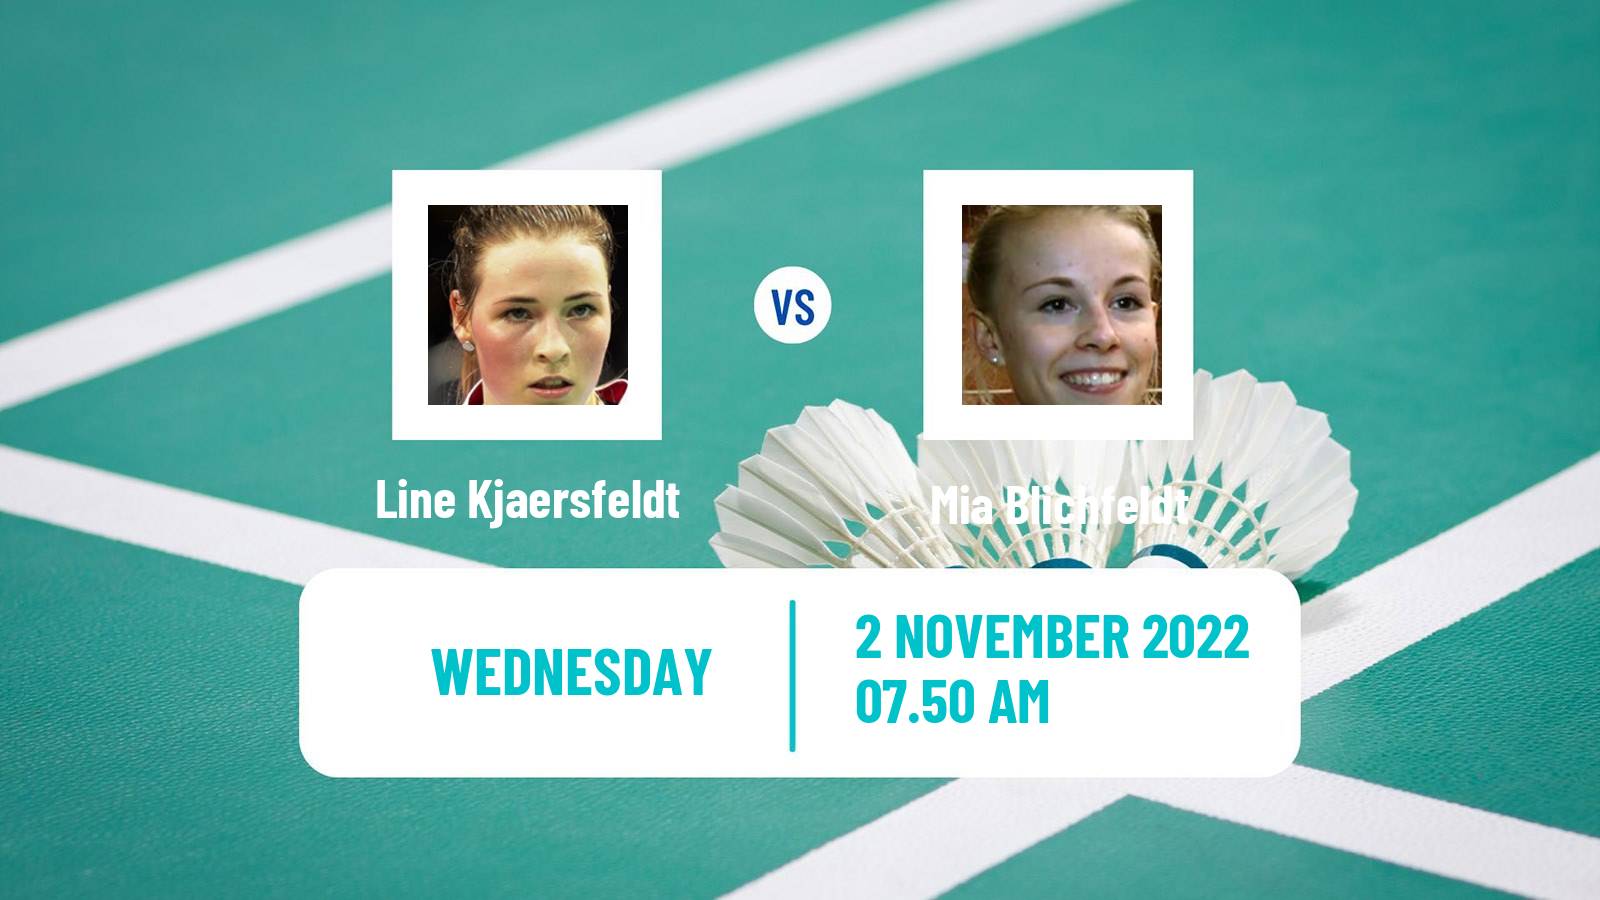 Badminton Badminton Line Kjaersfeldt - Mia Blichfeldt